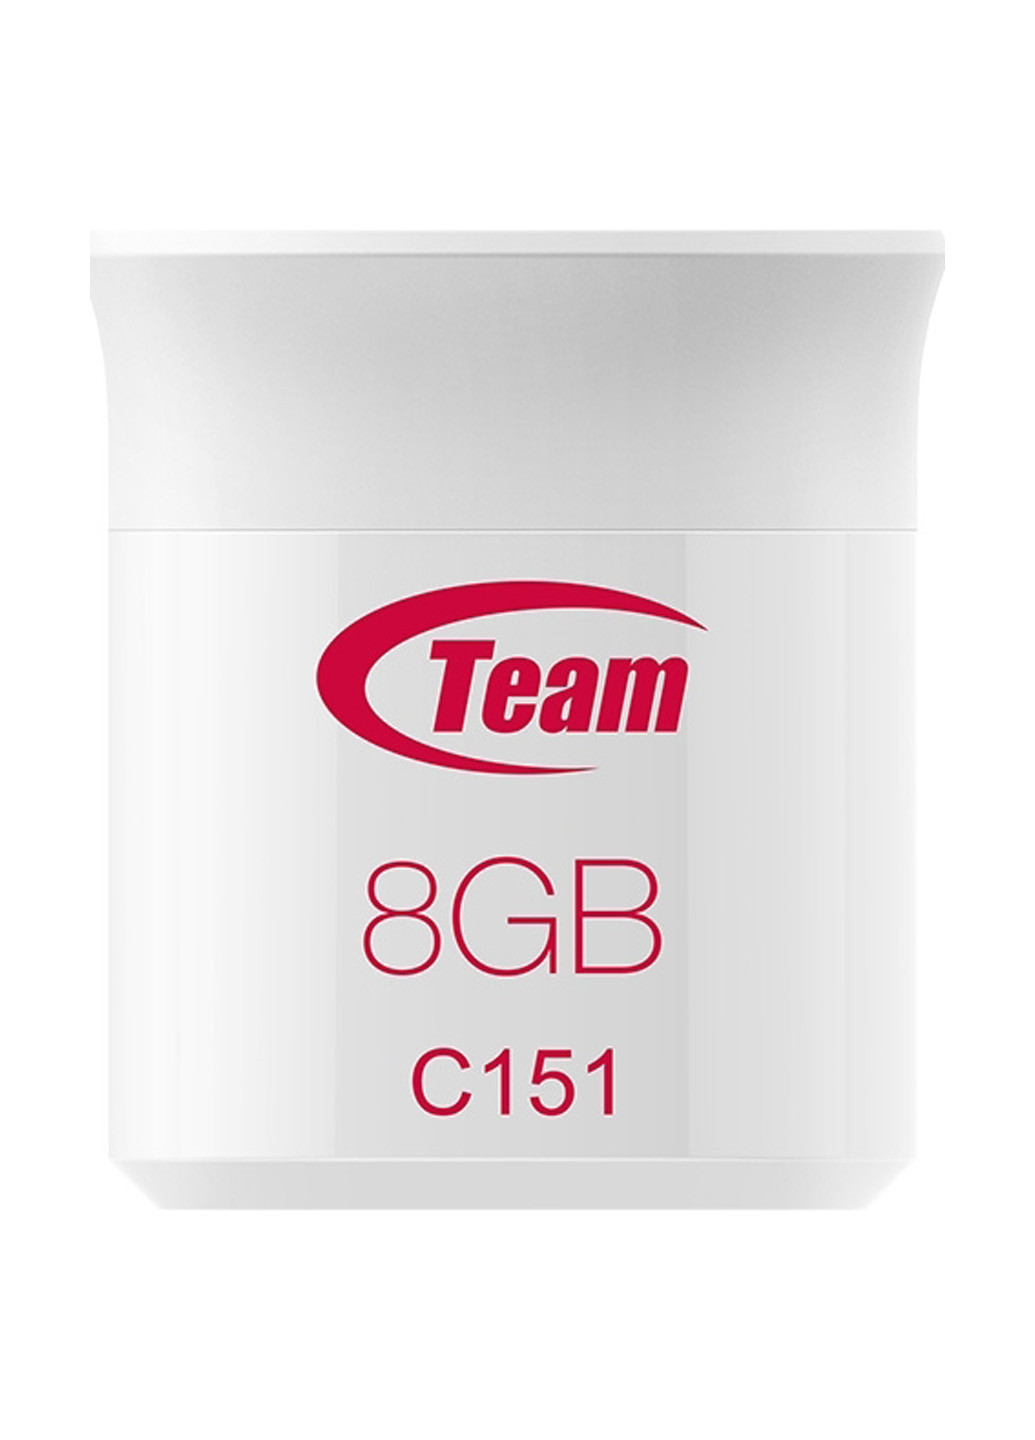 Флеш пам'ять USB C151 8GB Red (TC1518GR01) Team флеш память usb team c151 8gb red (tc1518gr01) (134201740)